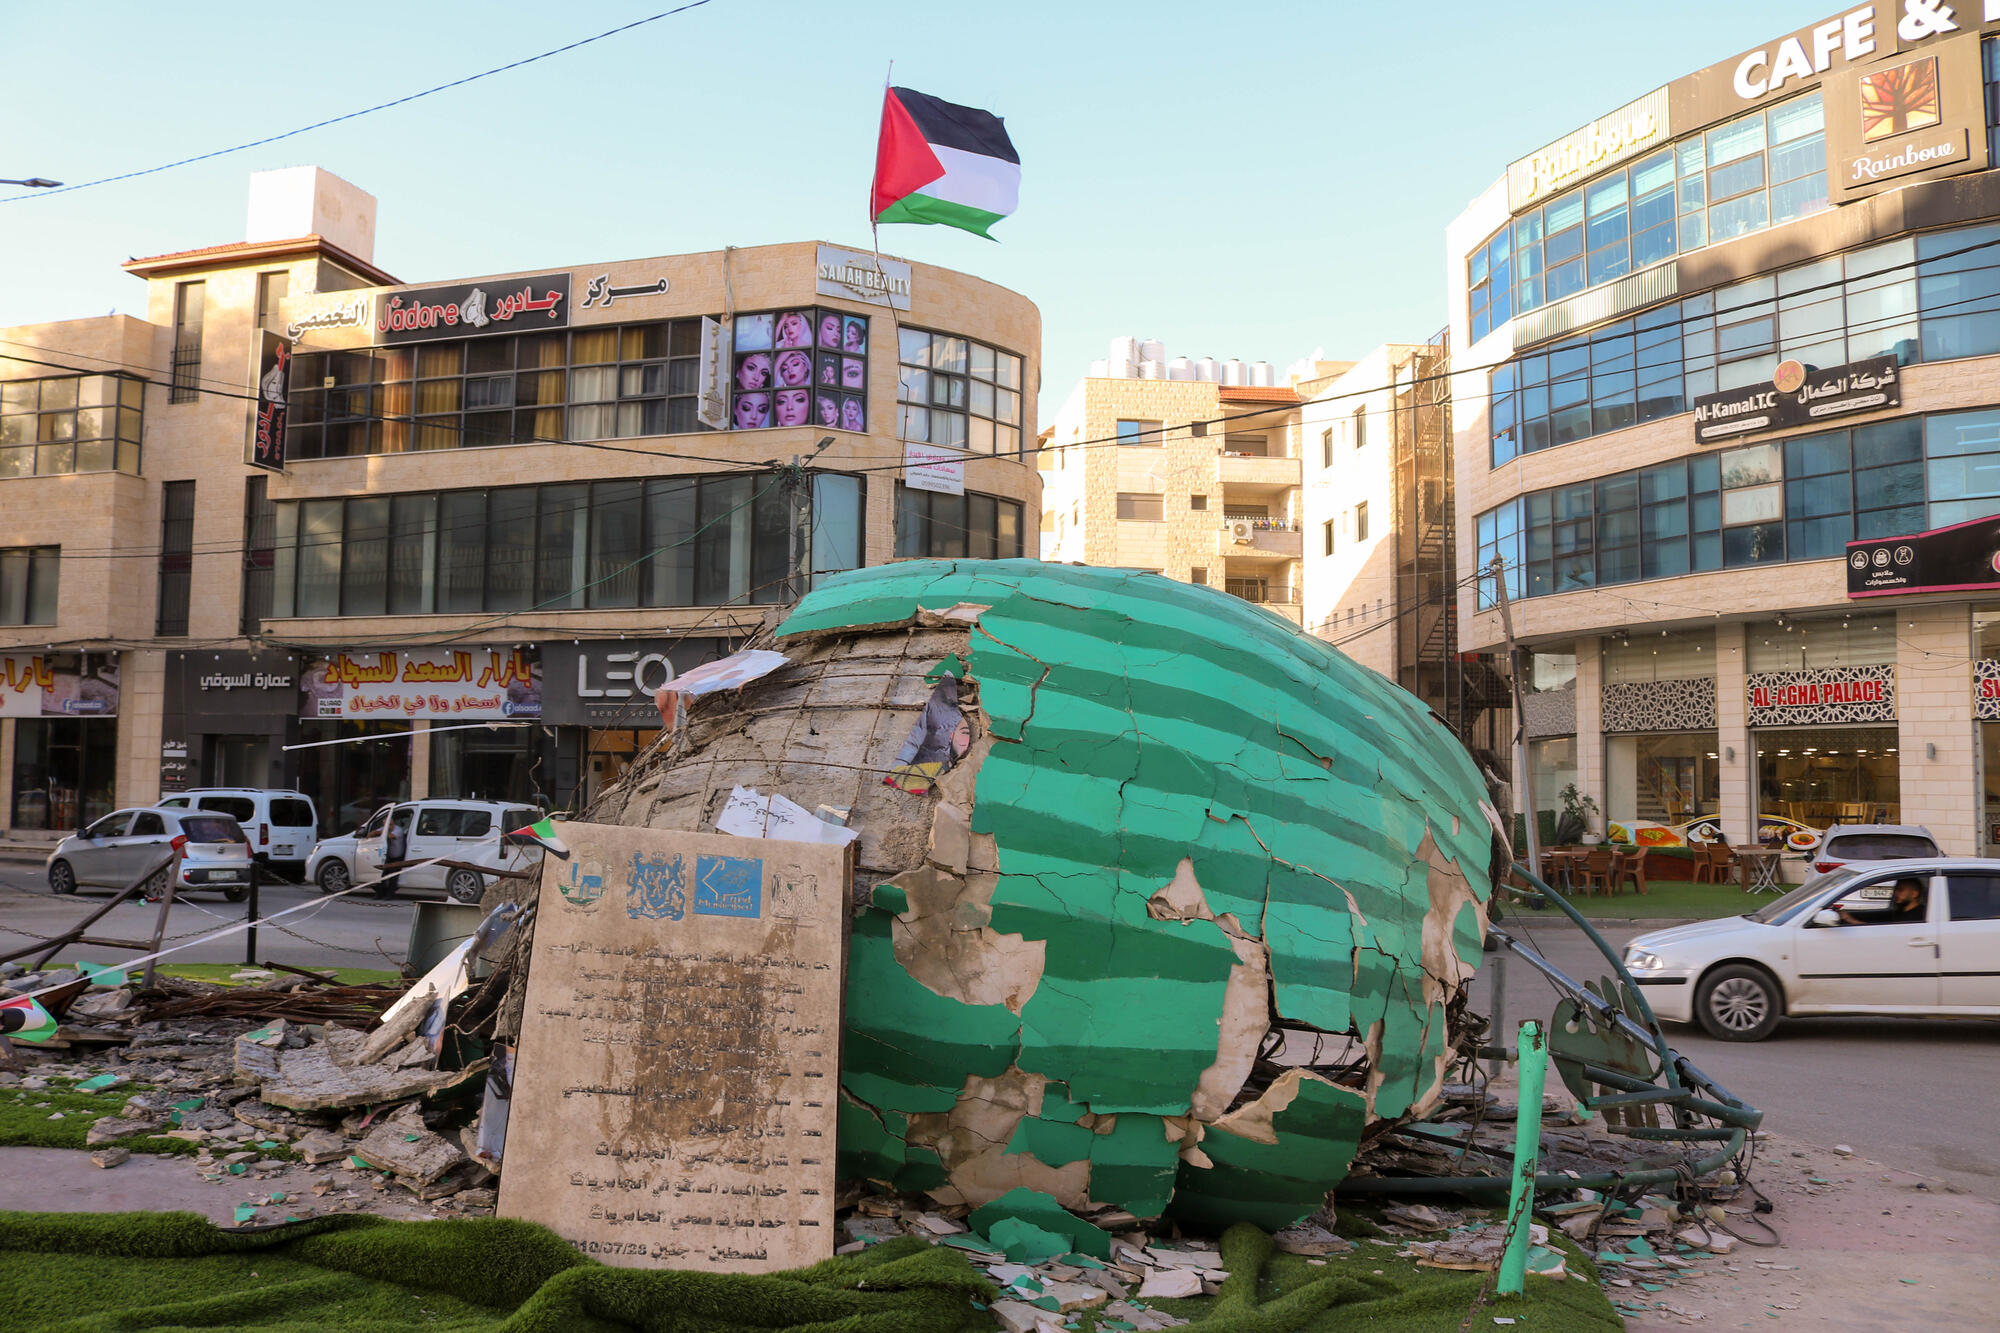 在傑寧，這西瓜形迴旋處象徵巴勒斯坦人的驕傲，但在一次軍事襲擊中被摧毀。自 10 月 7 日起，以色列暴力入侵傑寧已成常態。© FARIS AL-JAWAD/MSF